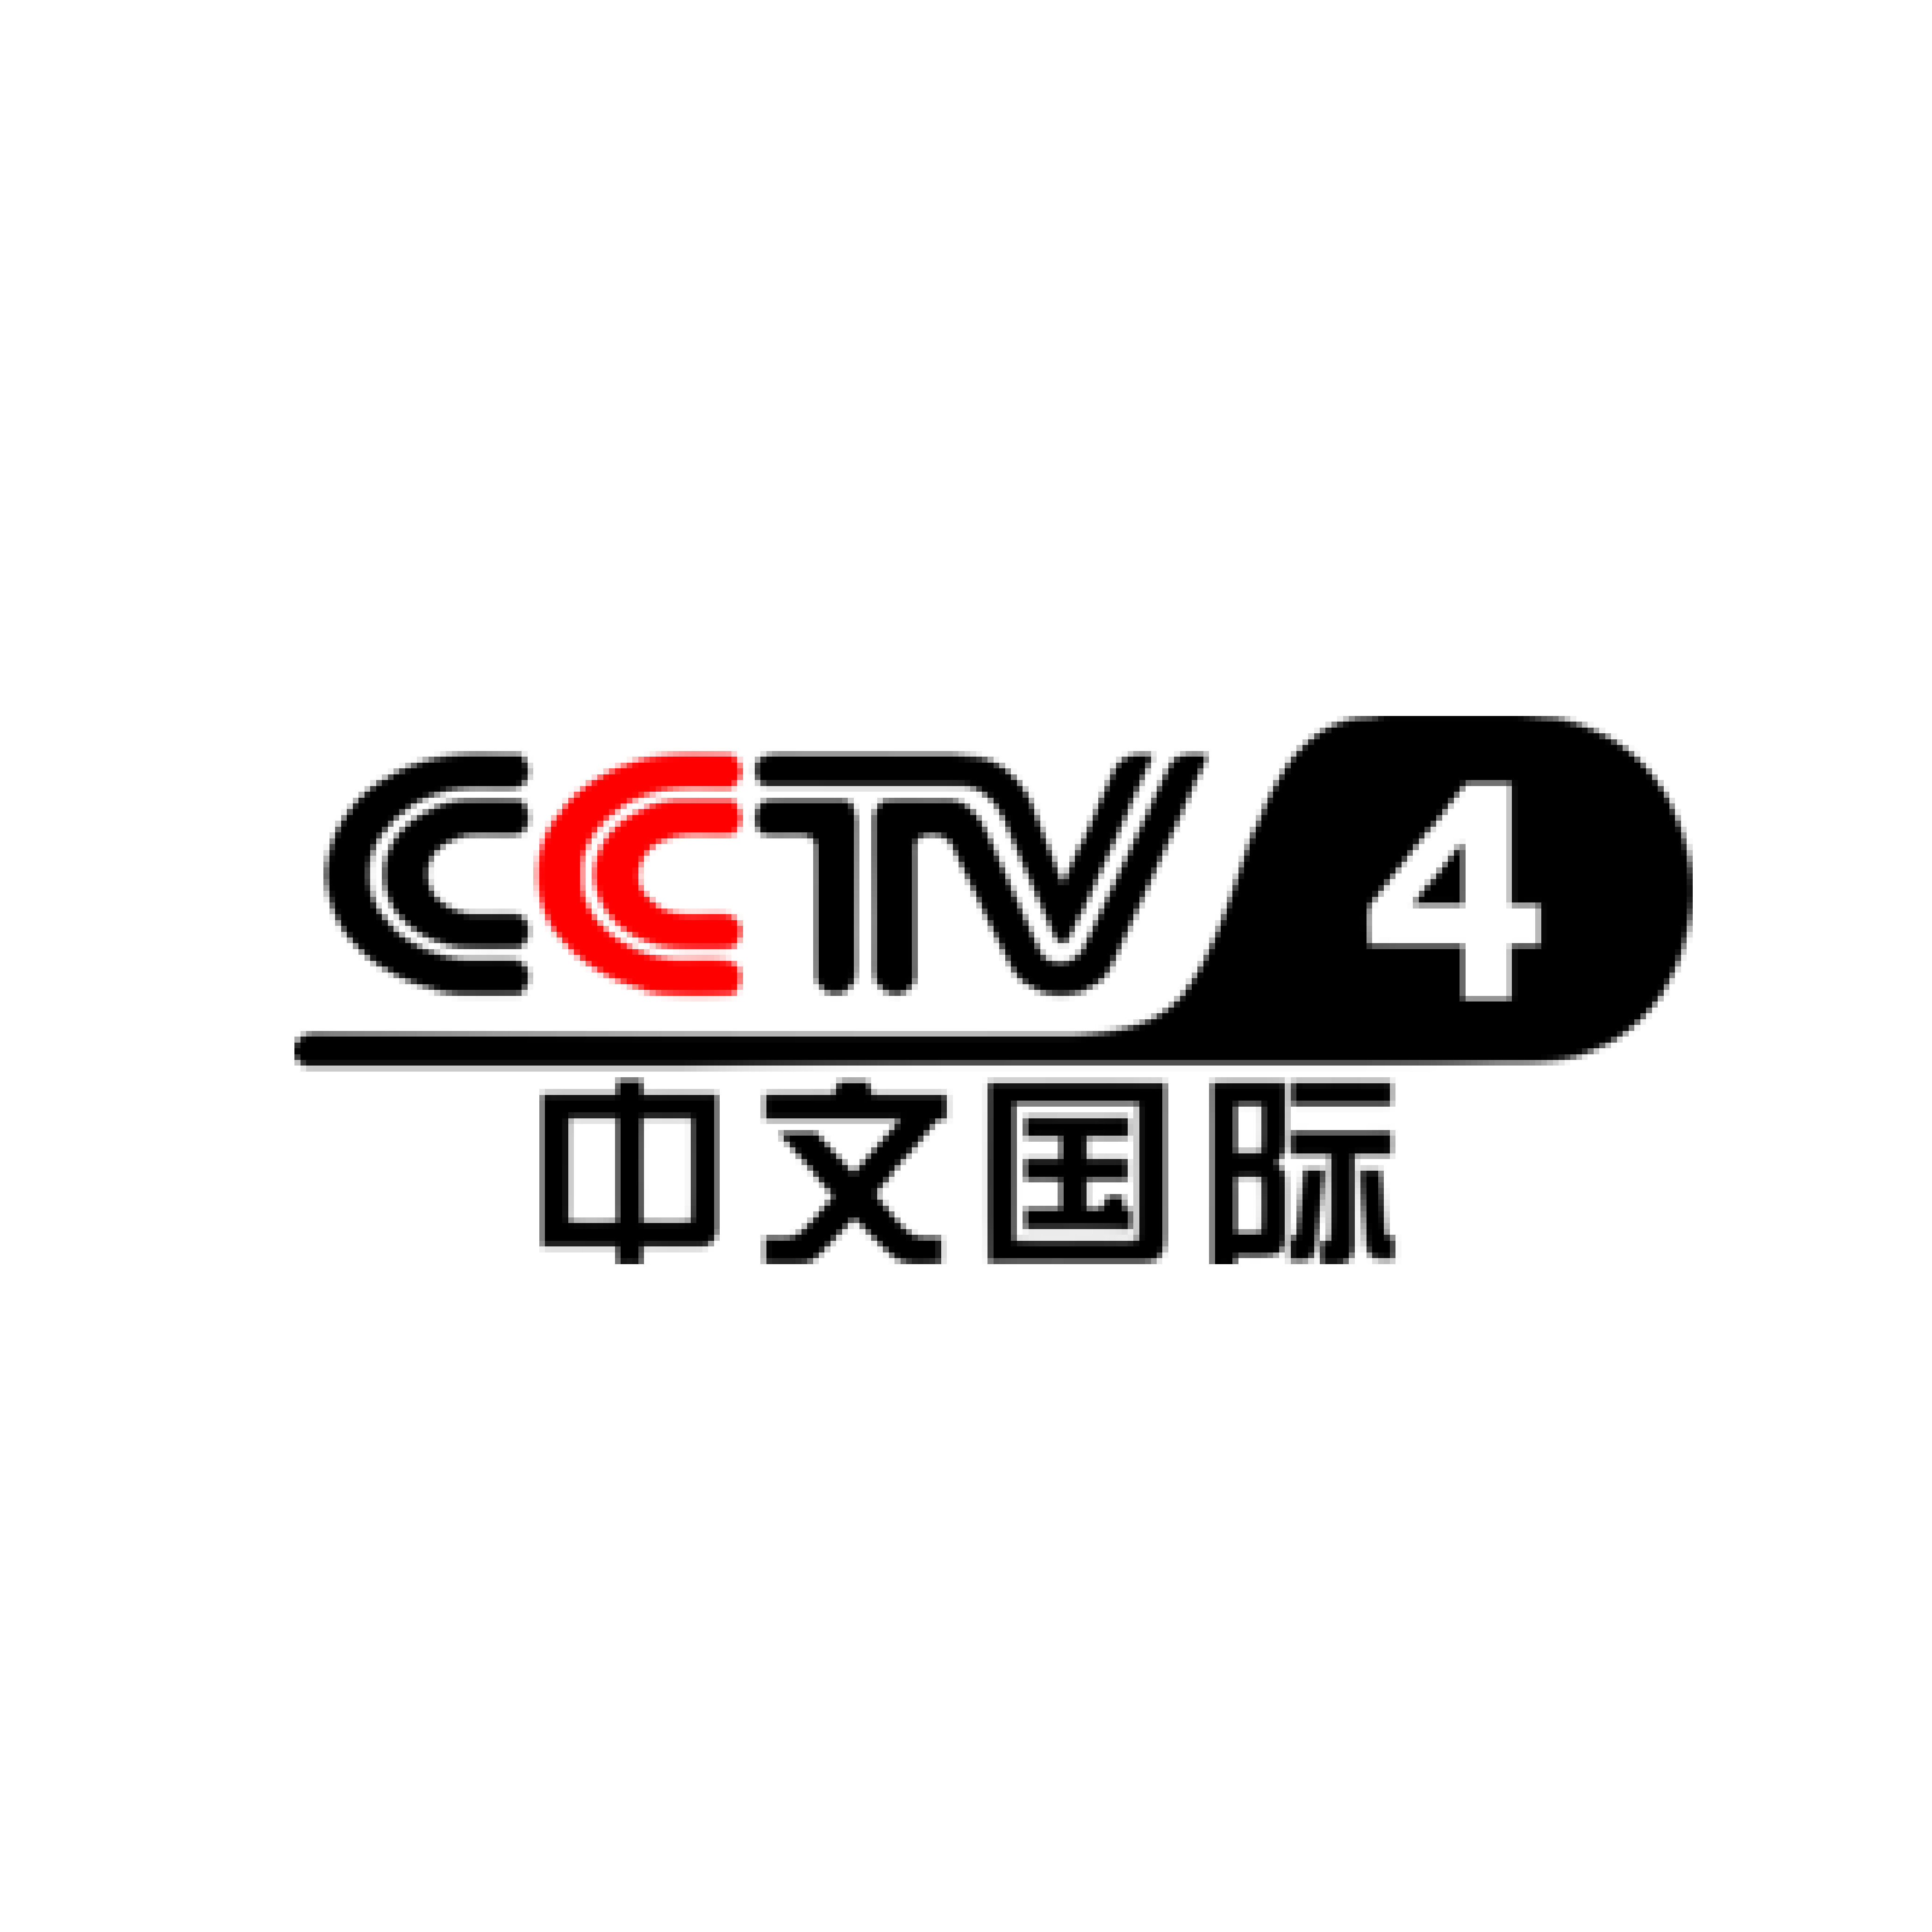 cctv_logo